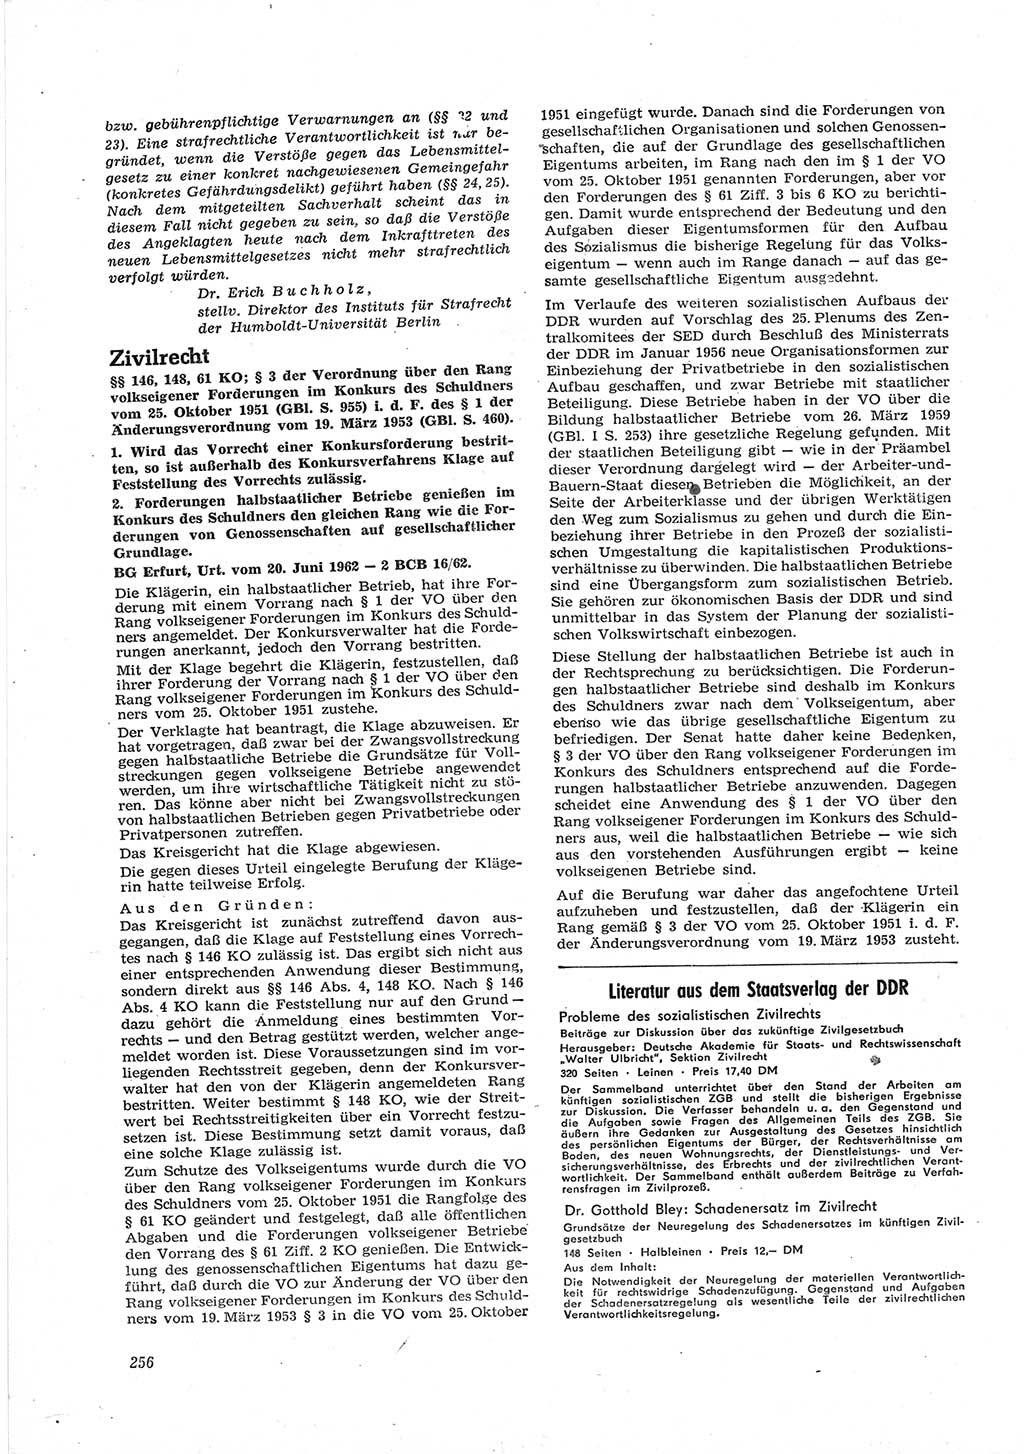 Neue Justiz (NJ), Zeitschrift für Recht und Rechtswissenschaft [Deutsche Demokratische Republik (DDR)], 17. Jahrgang 1963, Seite 256 (NJ DDR 1963, S. 256)